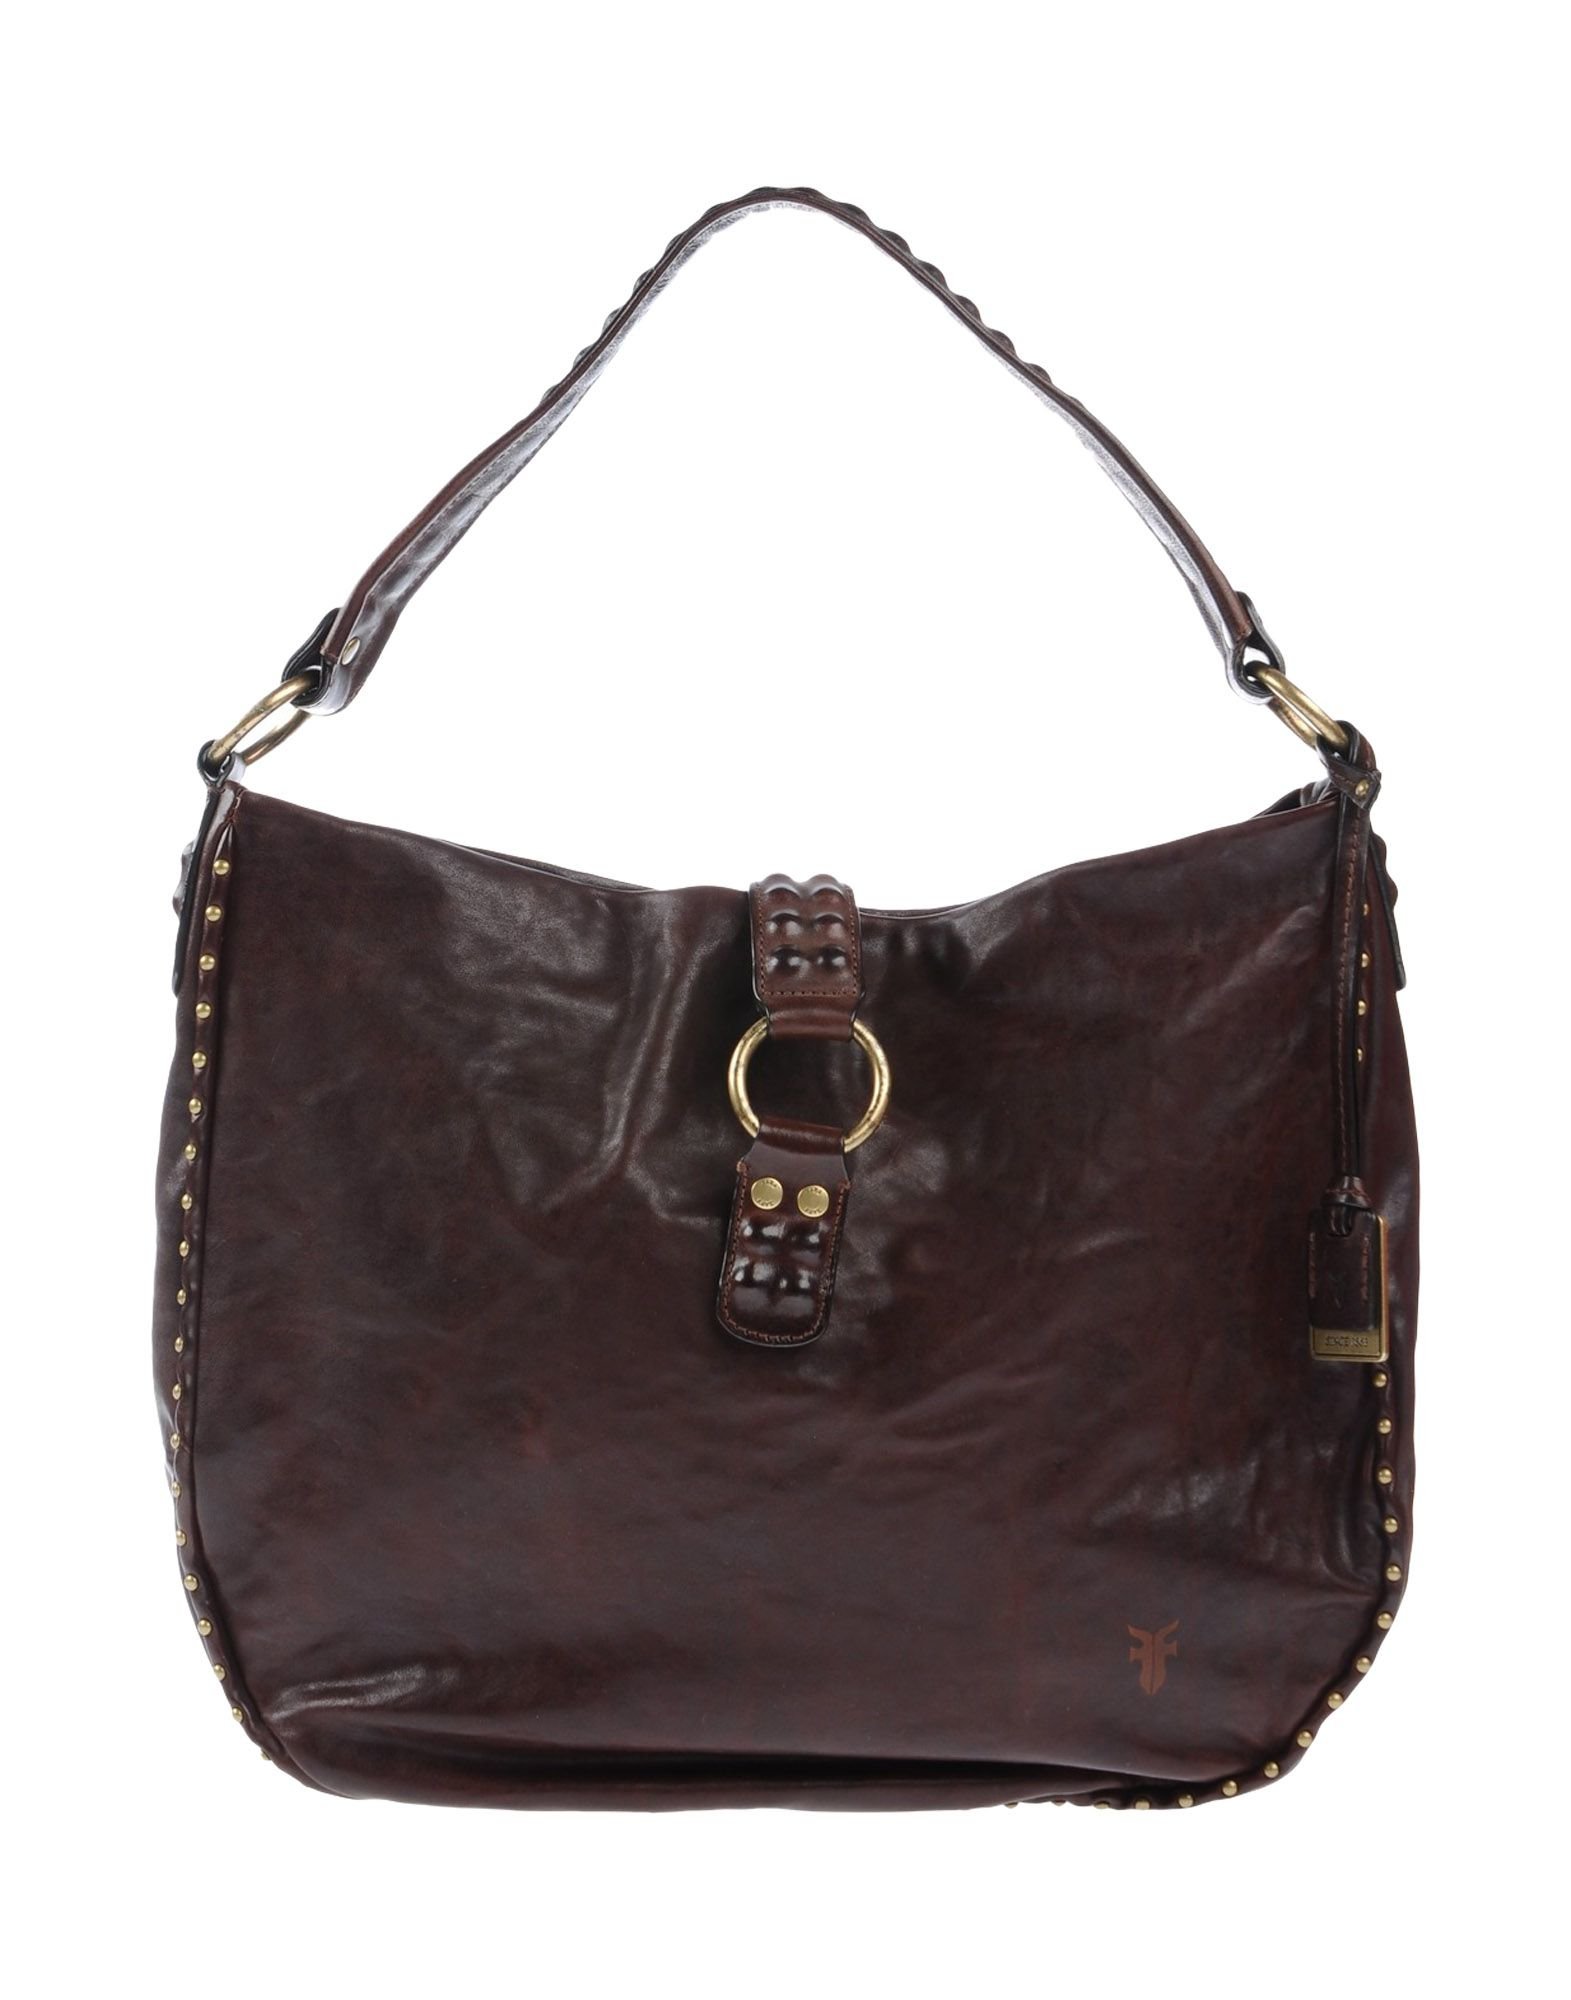 Lyst - Frye Handbag in Brown